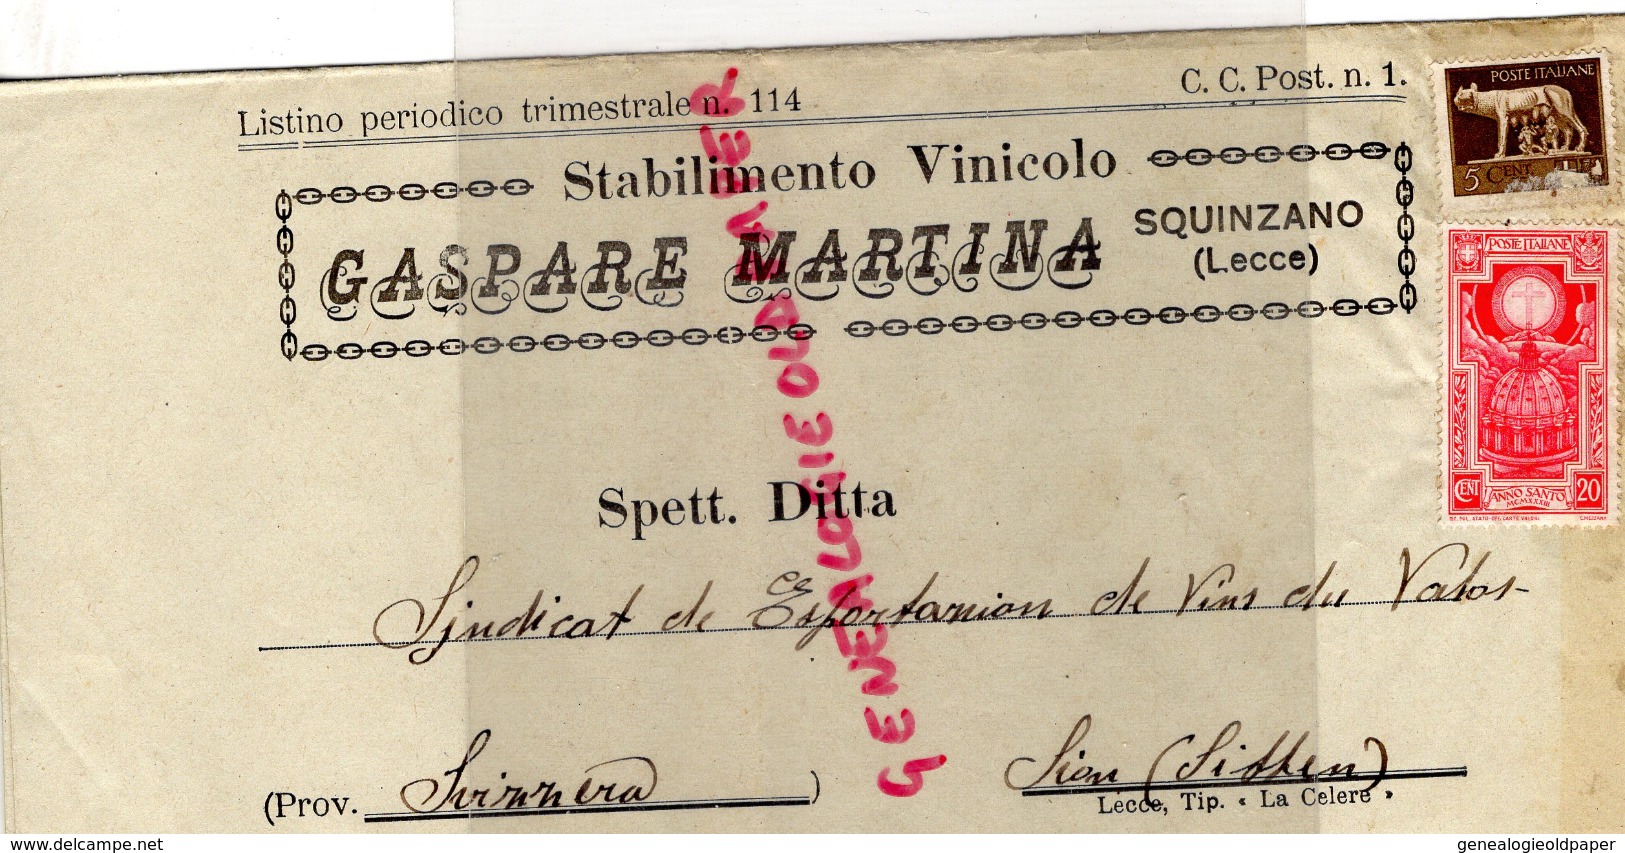 ITALIE - BELLE LETTRE FACTURE - GASPARE MARTINA-SQUINZANO ( LECCE ) UVE VINI- 1933- VINOCOLO - Italy